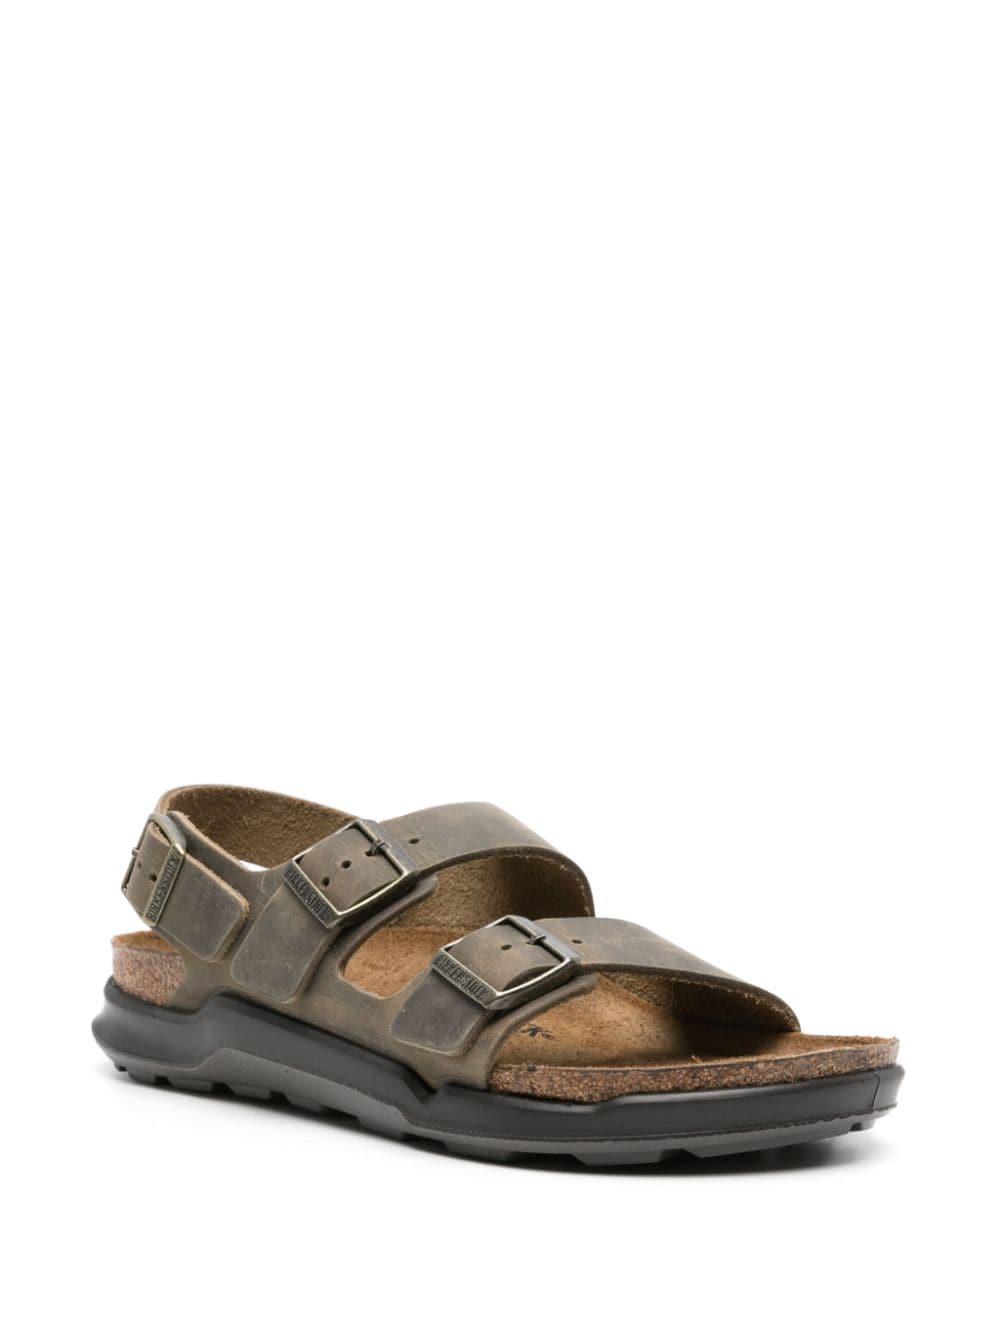 Birkenstock Milano leather sandals - Groen